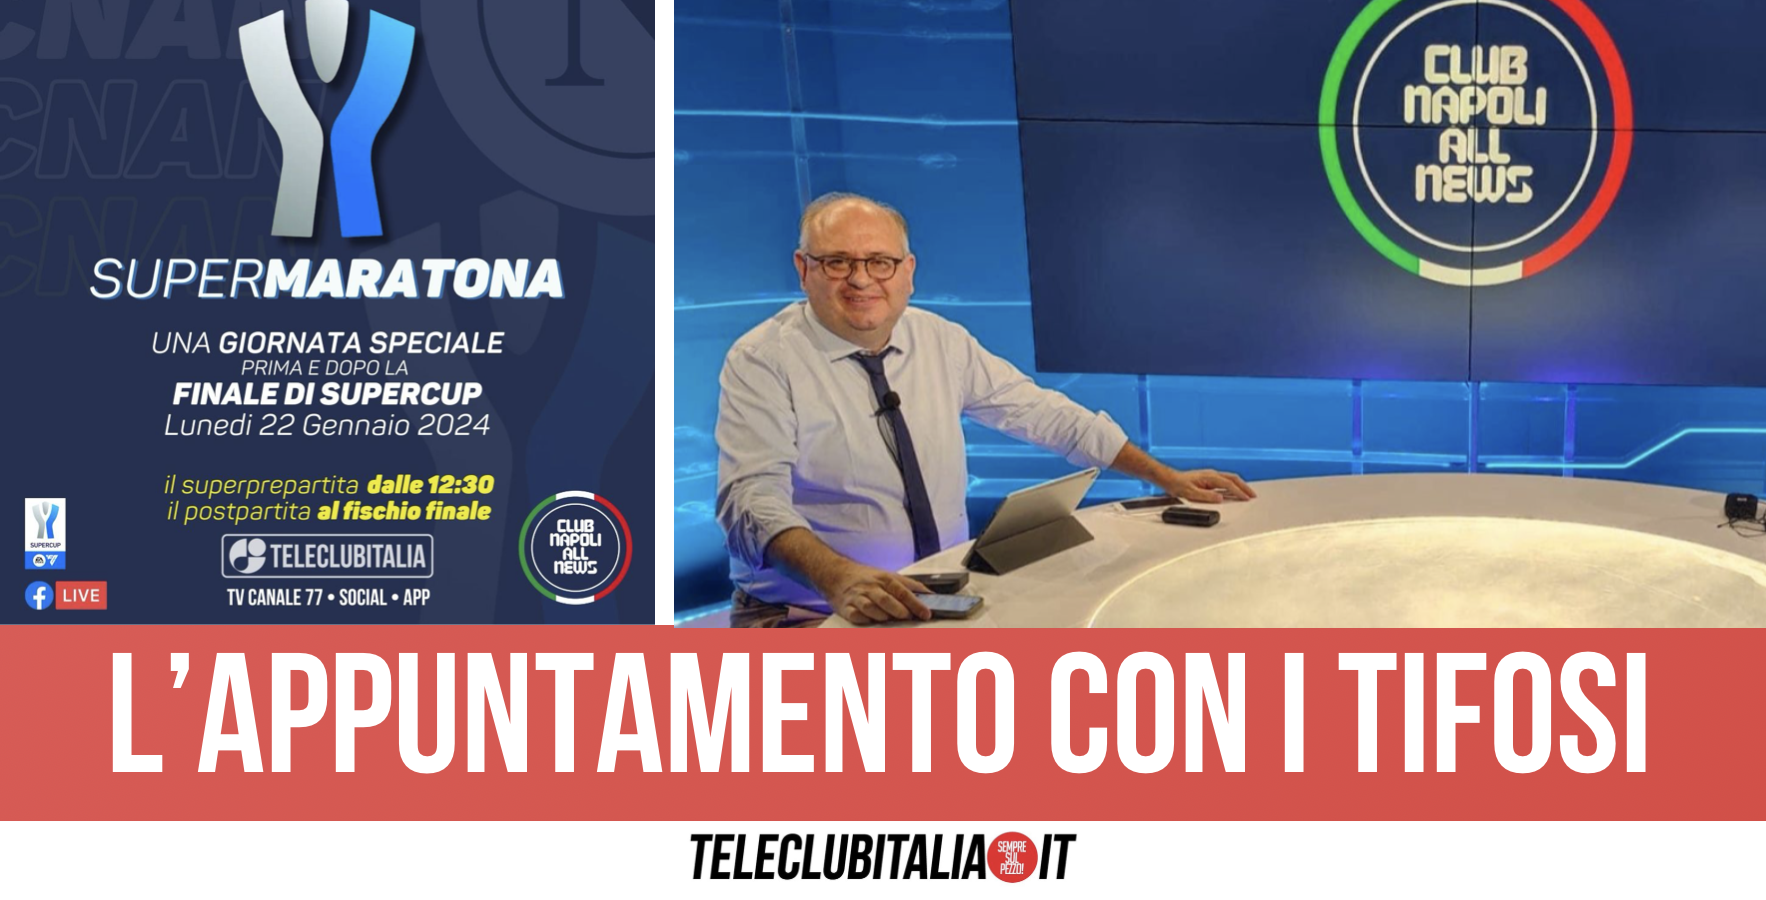 Napoli-Inter, “Club Napoli Allnews - Supermaratona” in onda lunedì su Teleclubitalia